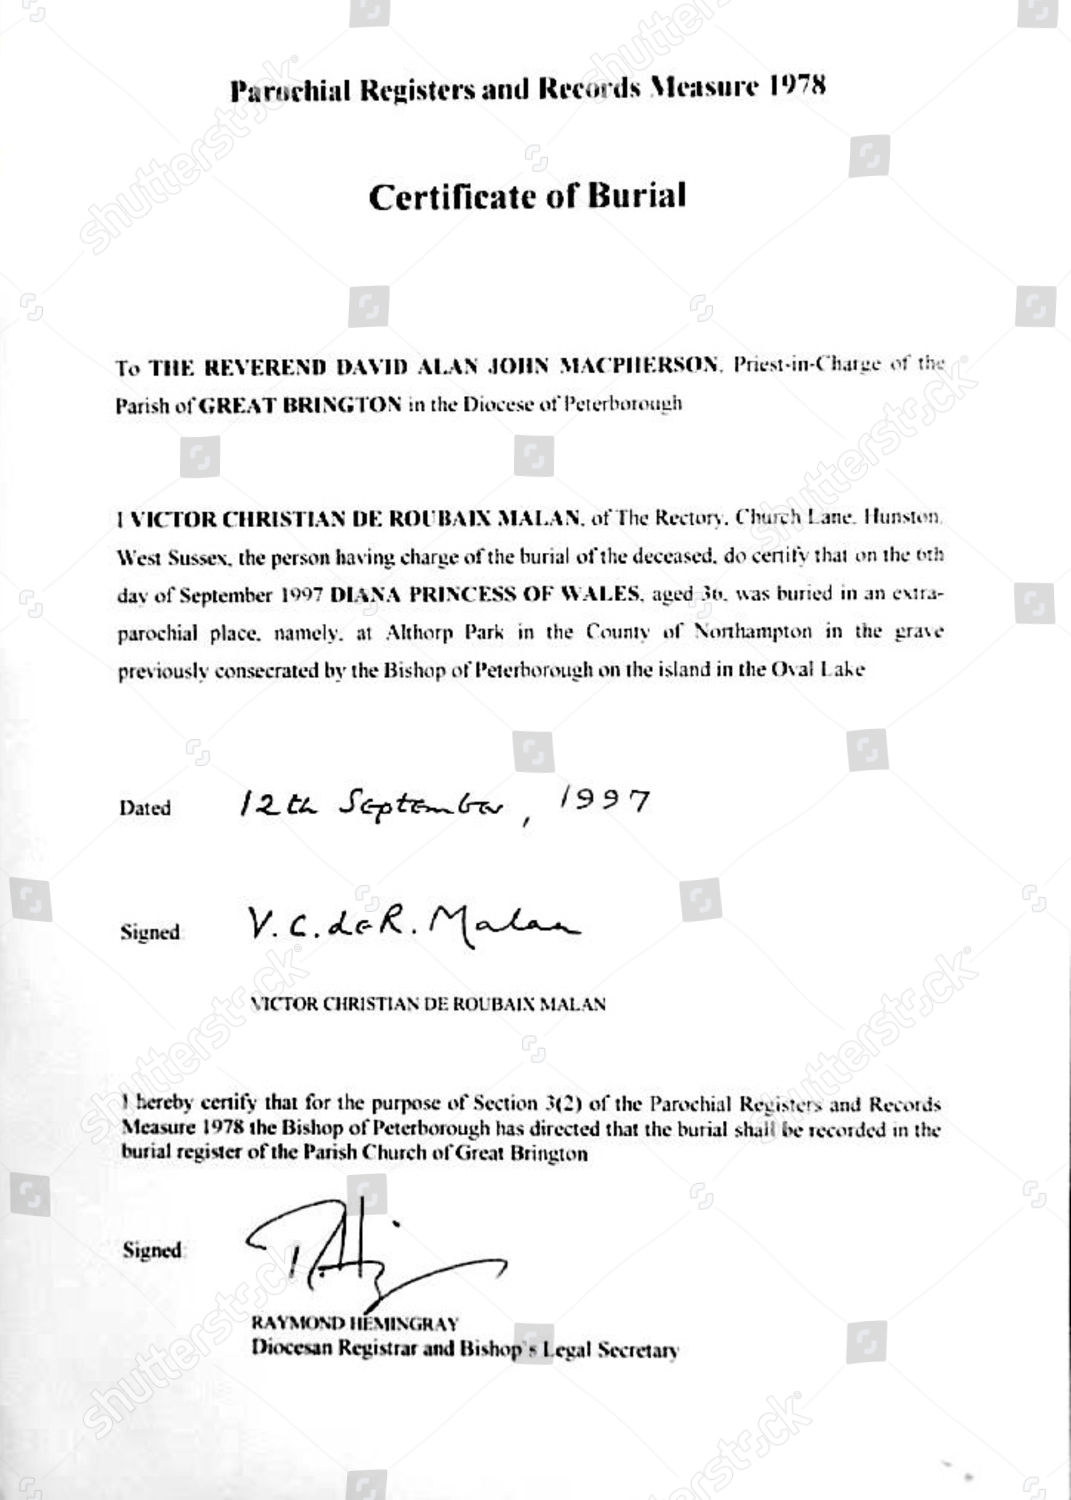 Princess Dianas Certificate Burial Editorial Stock Photo - Stock Image ...